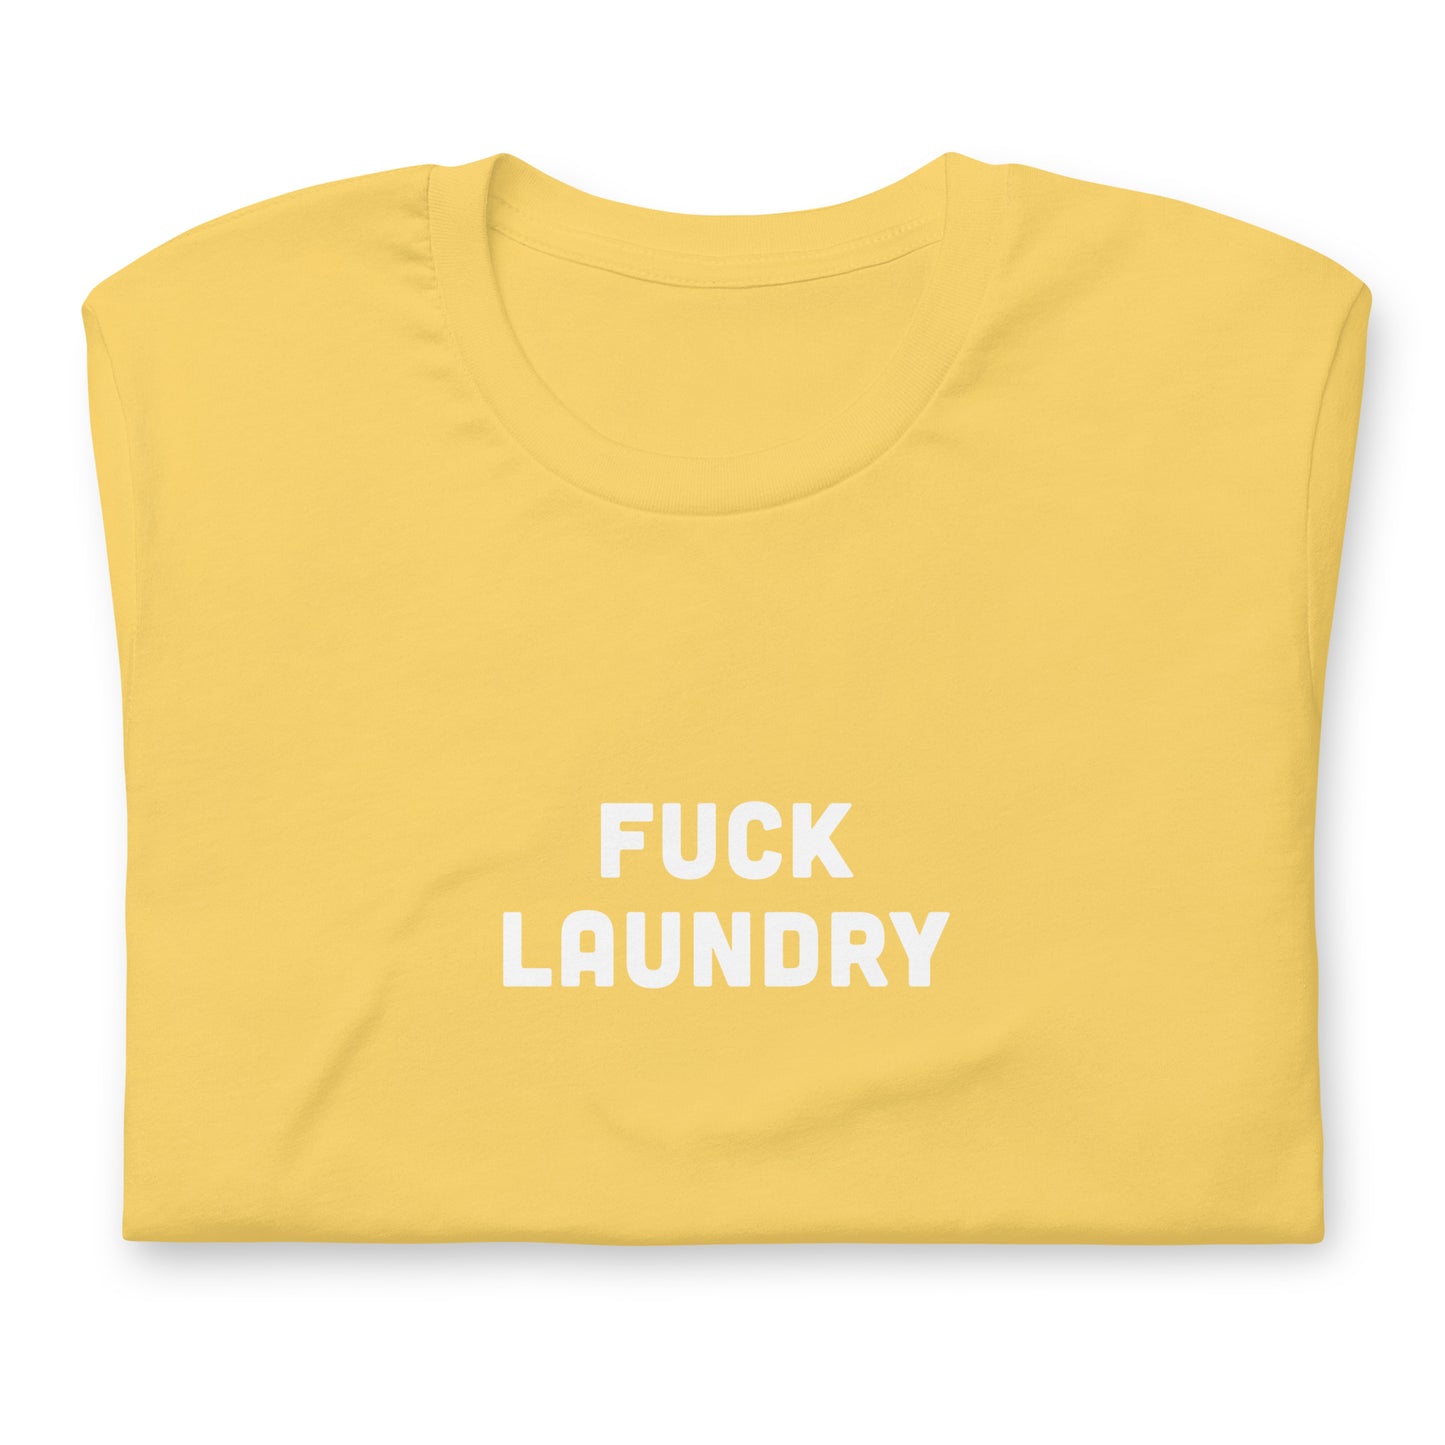 Fuck Laundry T-Shirt Size 2XL Color Asphalt